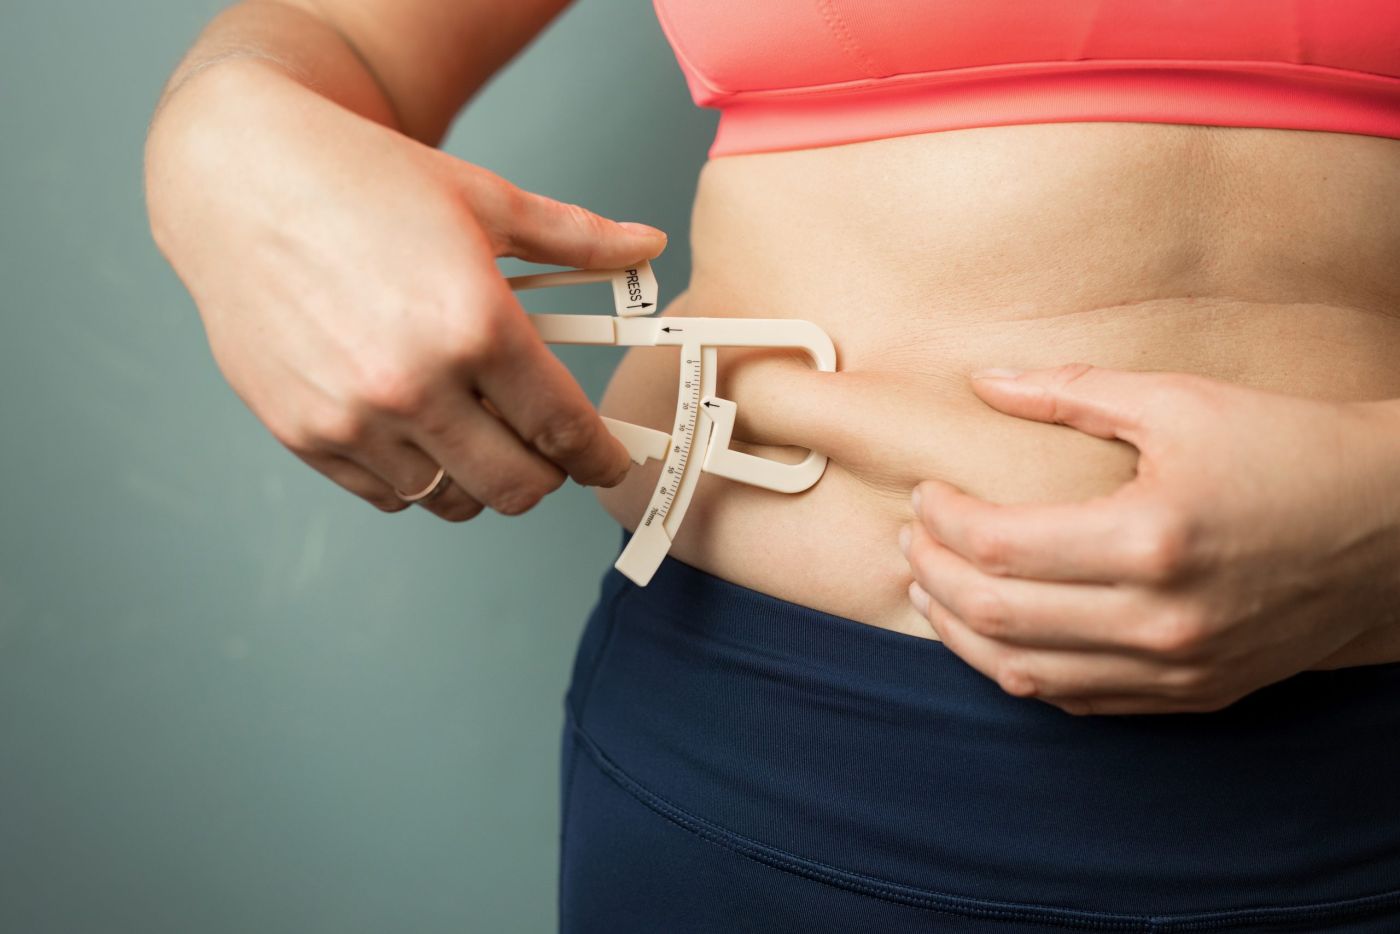 Αυξημένος ο κίνδυνος καταγμάτων για τις παχύσαρκες γυναίκες και τους πολύ αδύνατους άνδρες σύμφωνα με έρευνα